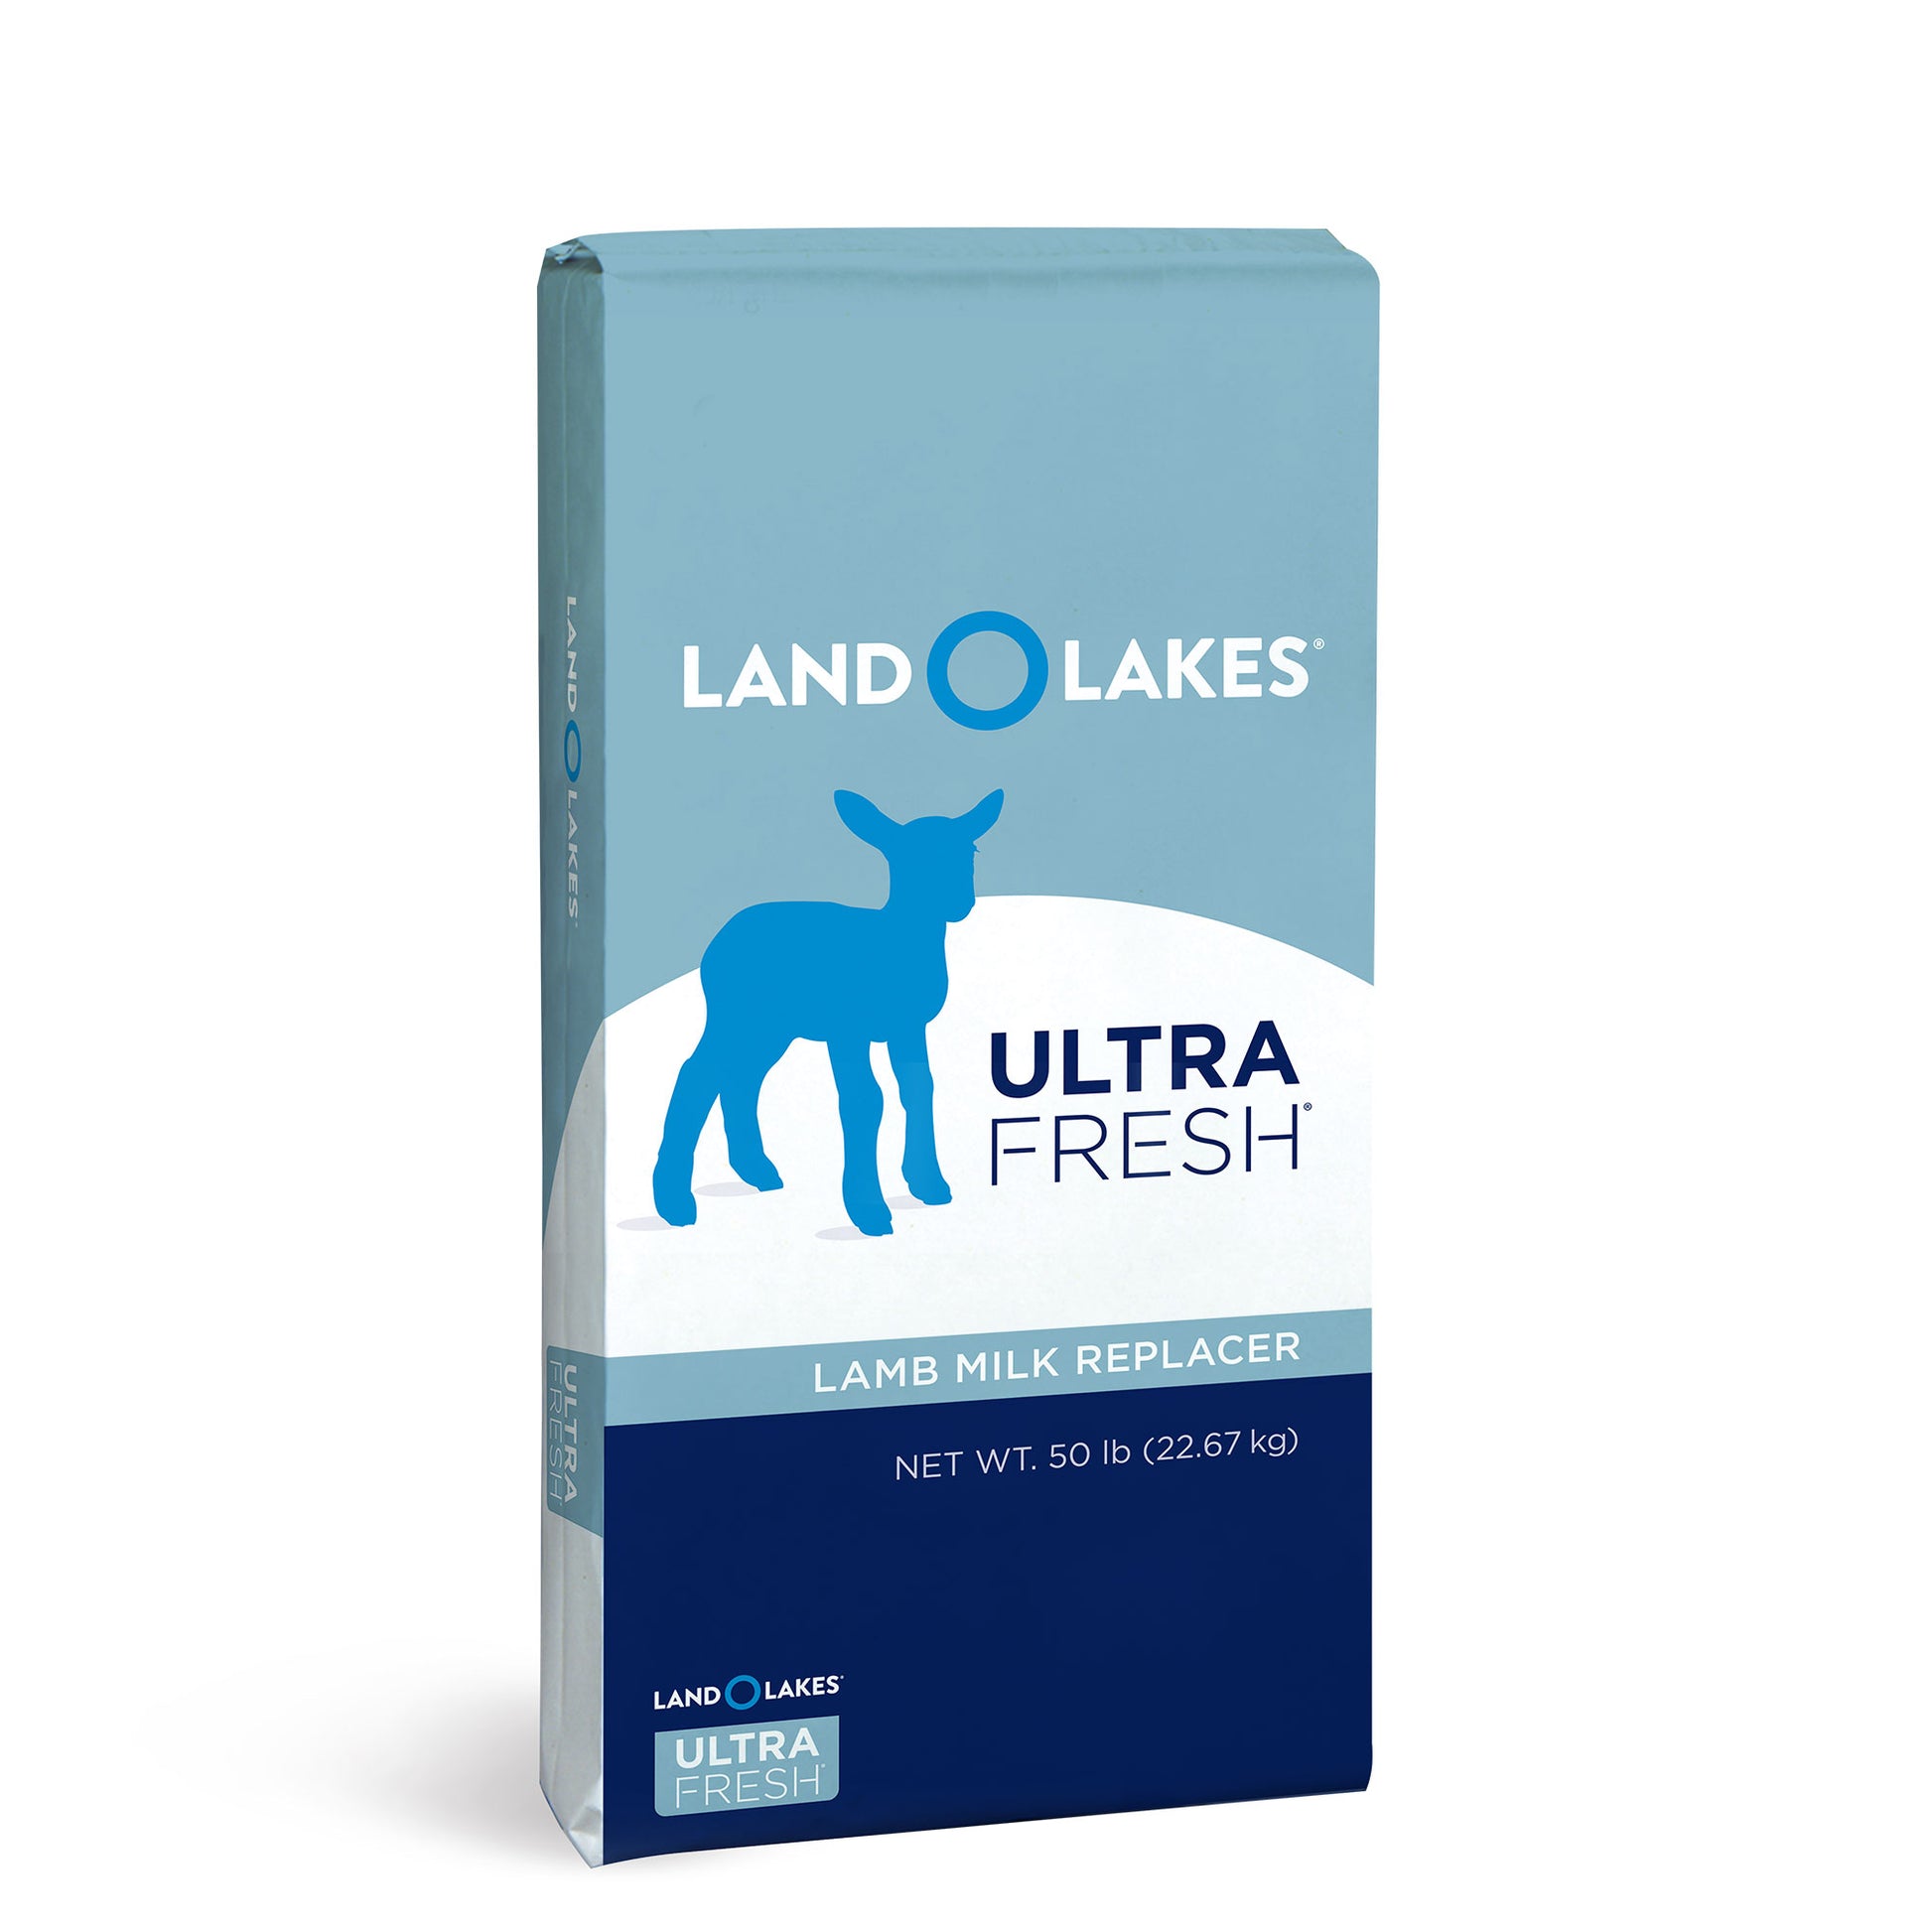 LAND O LAKES Ultra Fresh Lamb Milk Replacer 50 Pound bag